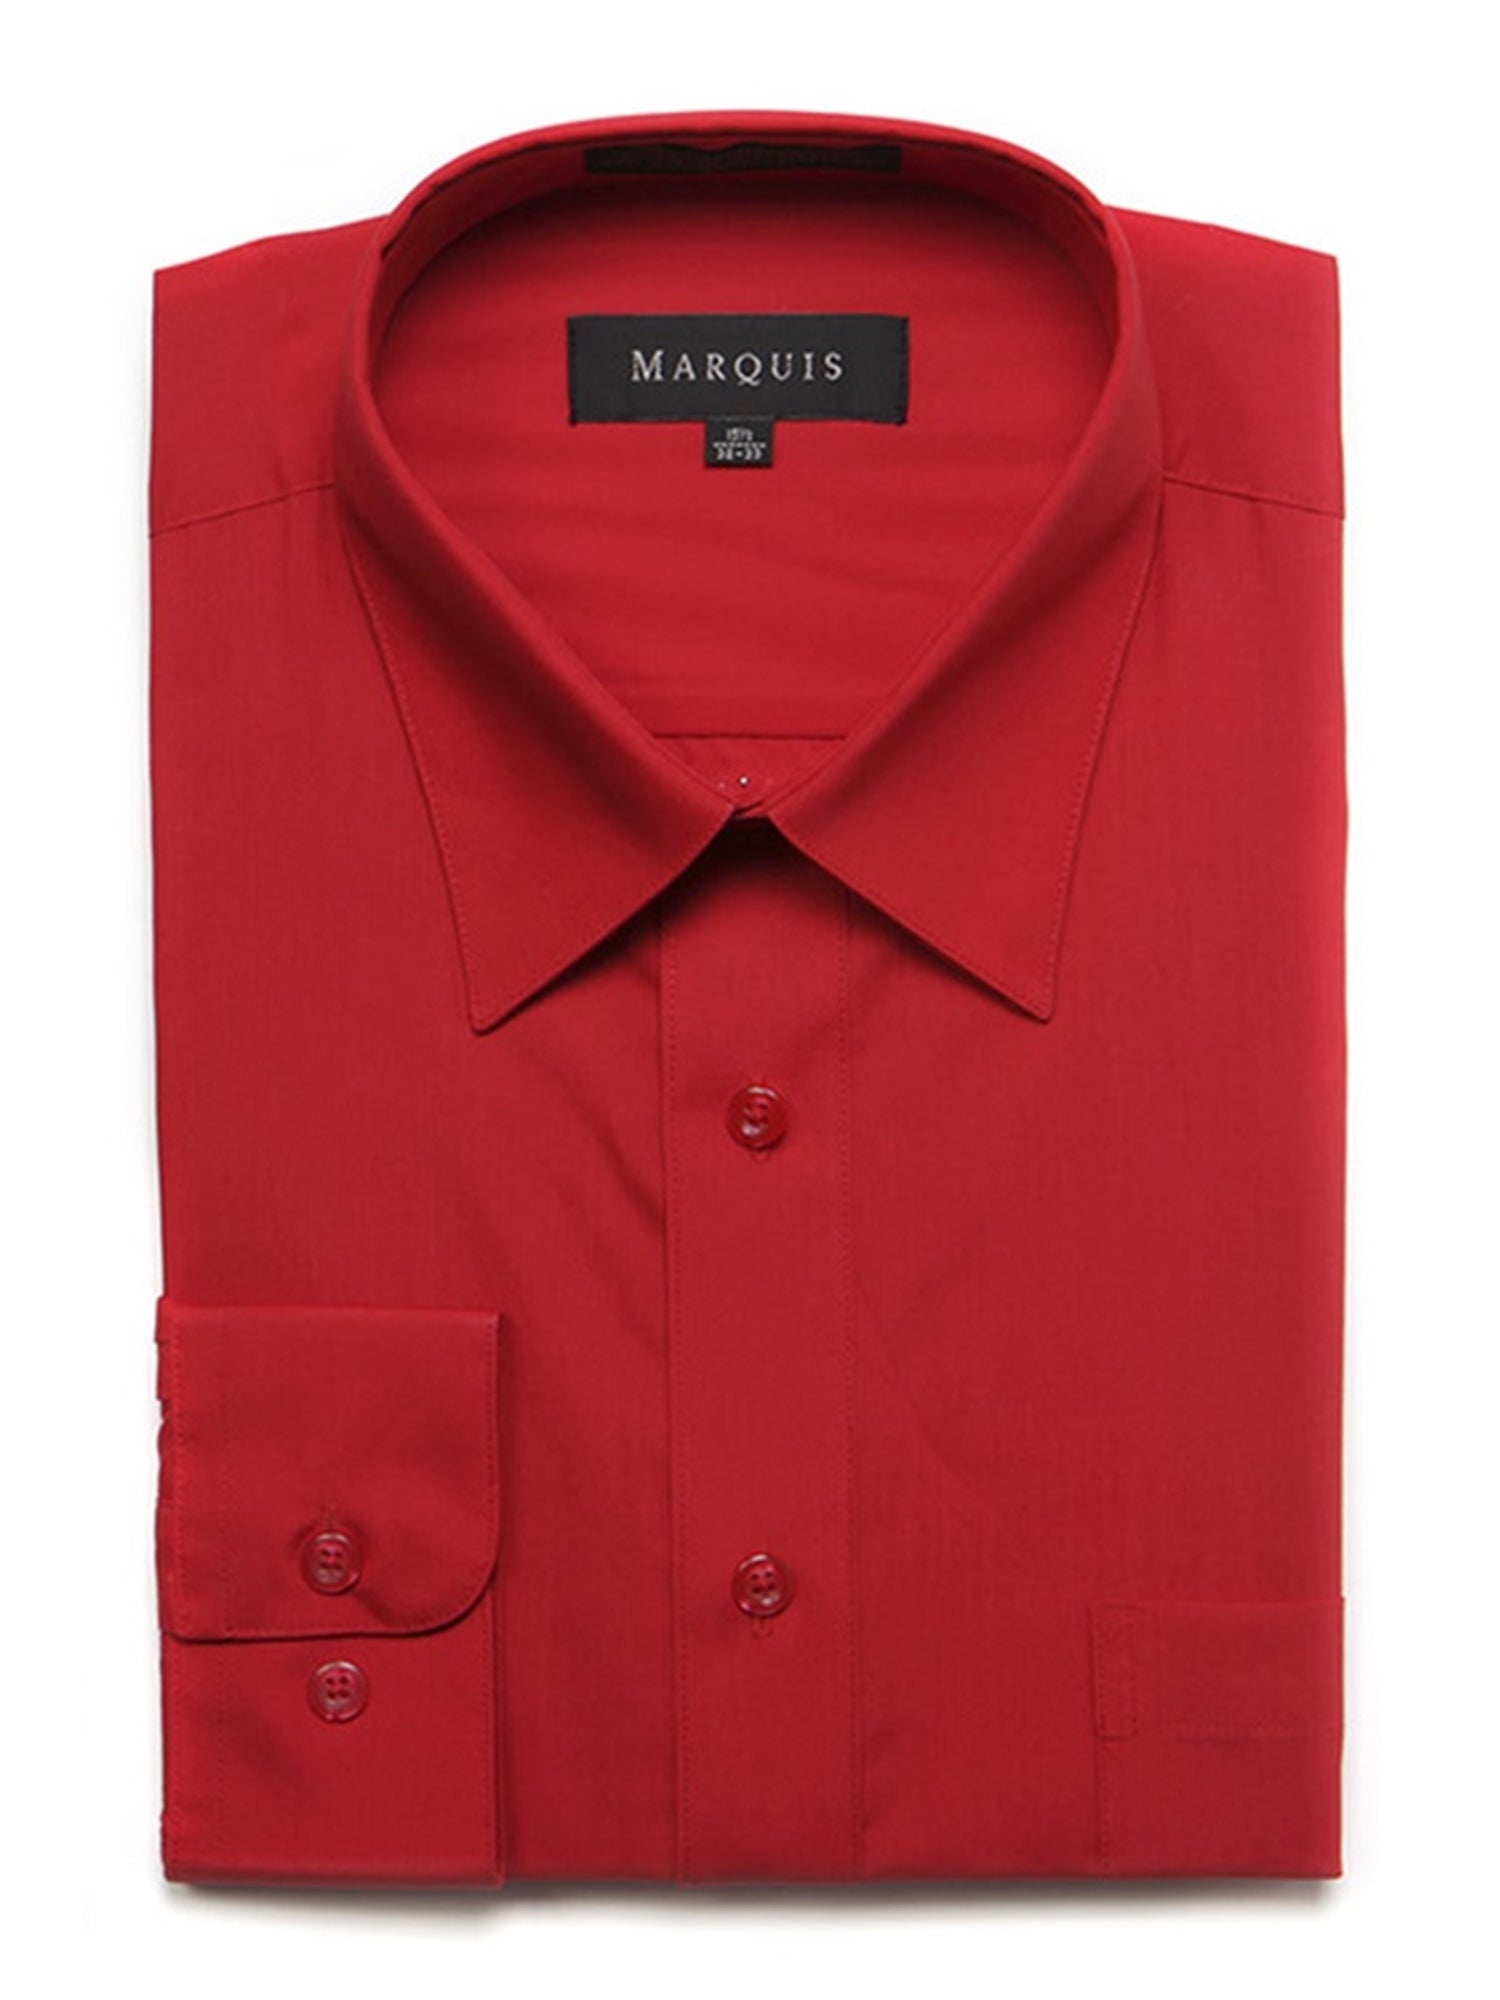 Marquis Men's Long Sleeve Regular Fit Dress Shirt Dress Shirt Marquis Red 14.5 Neck 32/33 Sleeve 